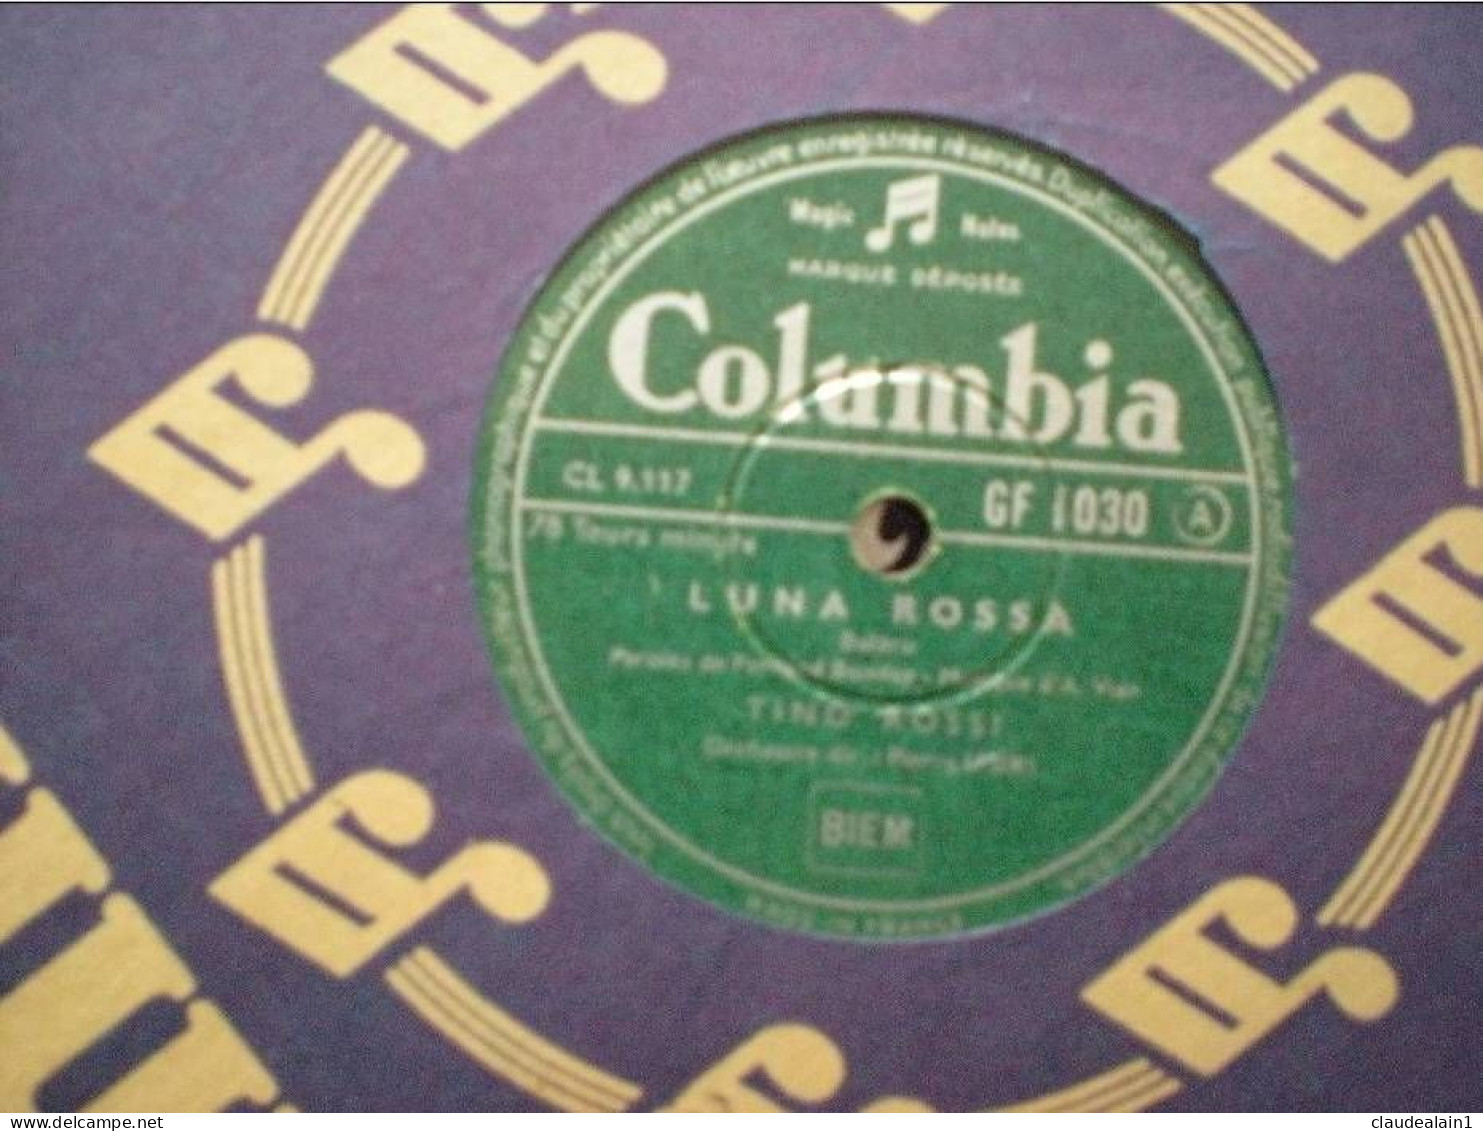 DISQUE COLUMBIA VINYLE 78T - TINO ROSSI - LUNA ROSSA - SI JAMAIS - 78 Rpm - Schellackplatten